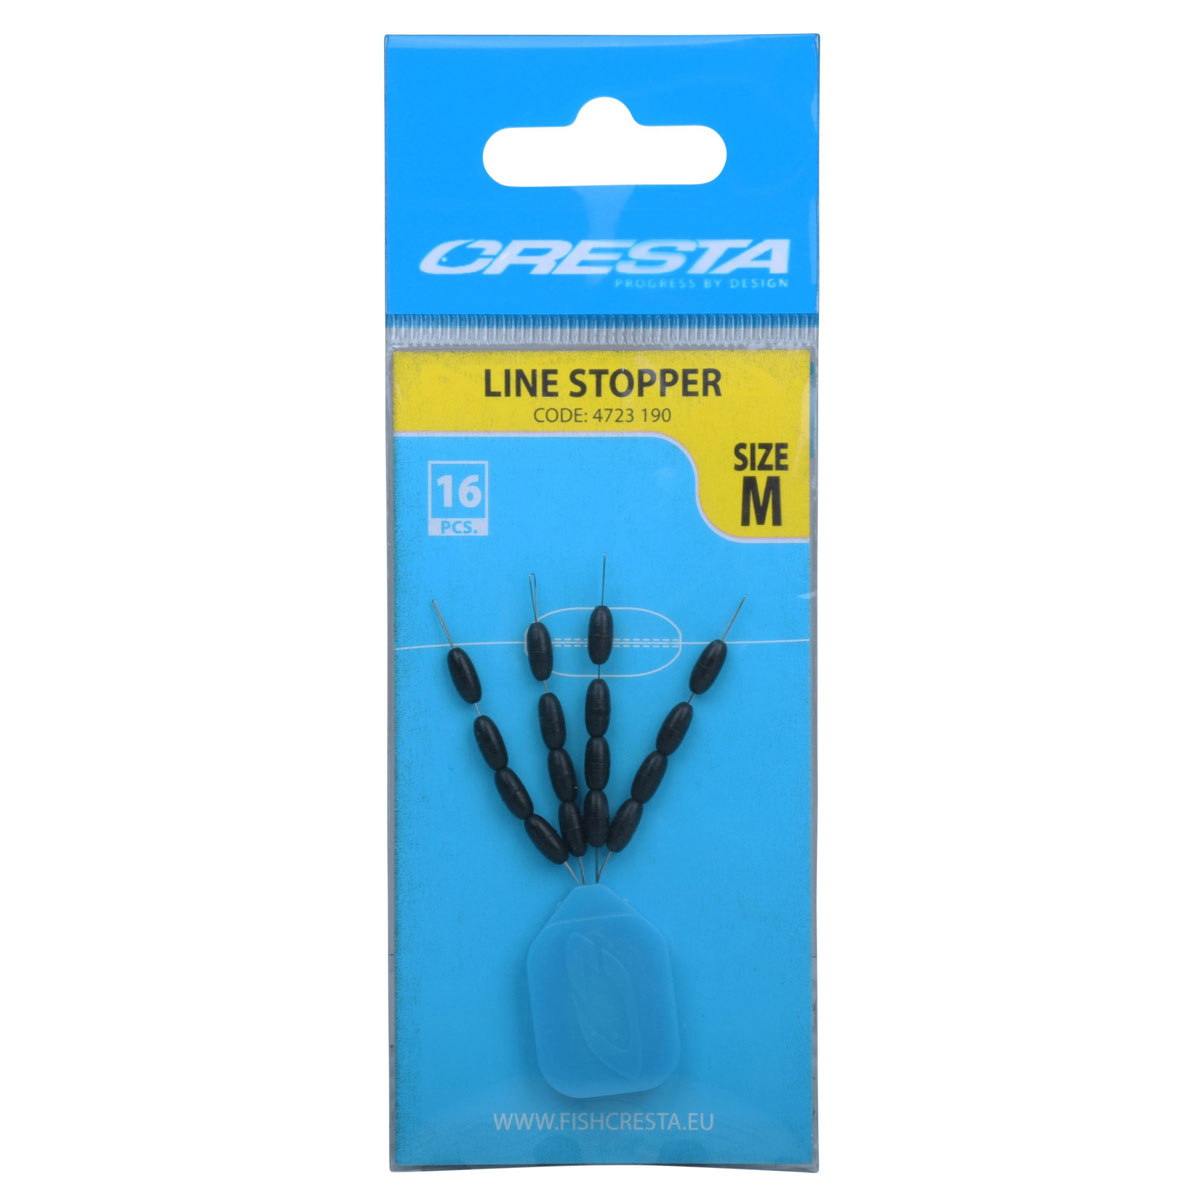 Cresta Linestoppers - Medium